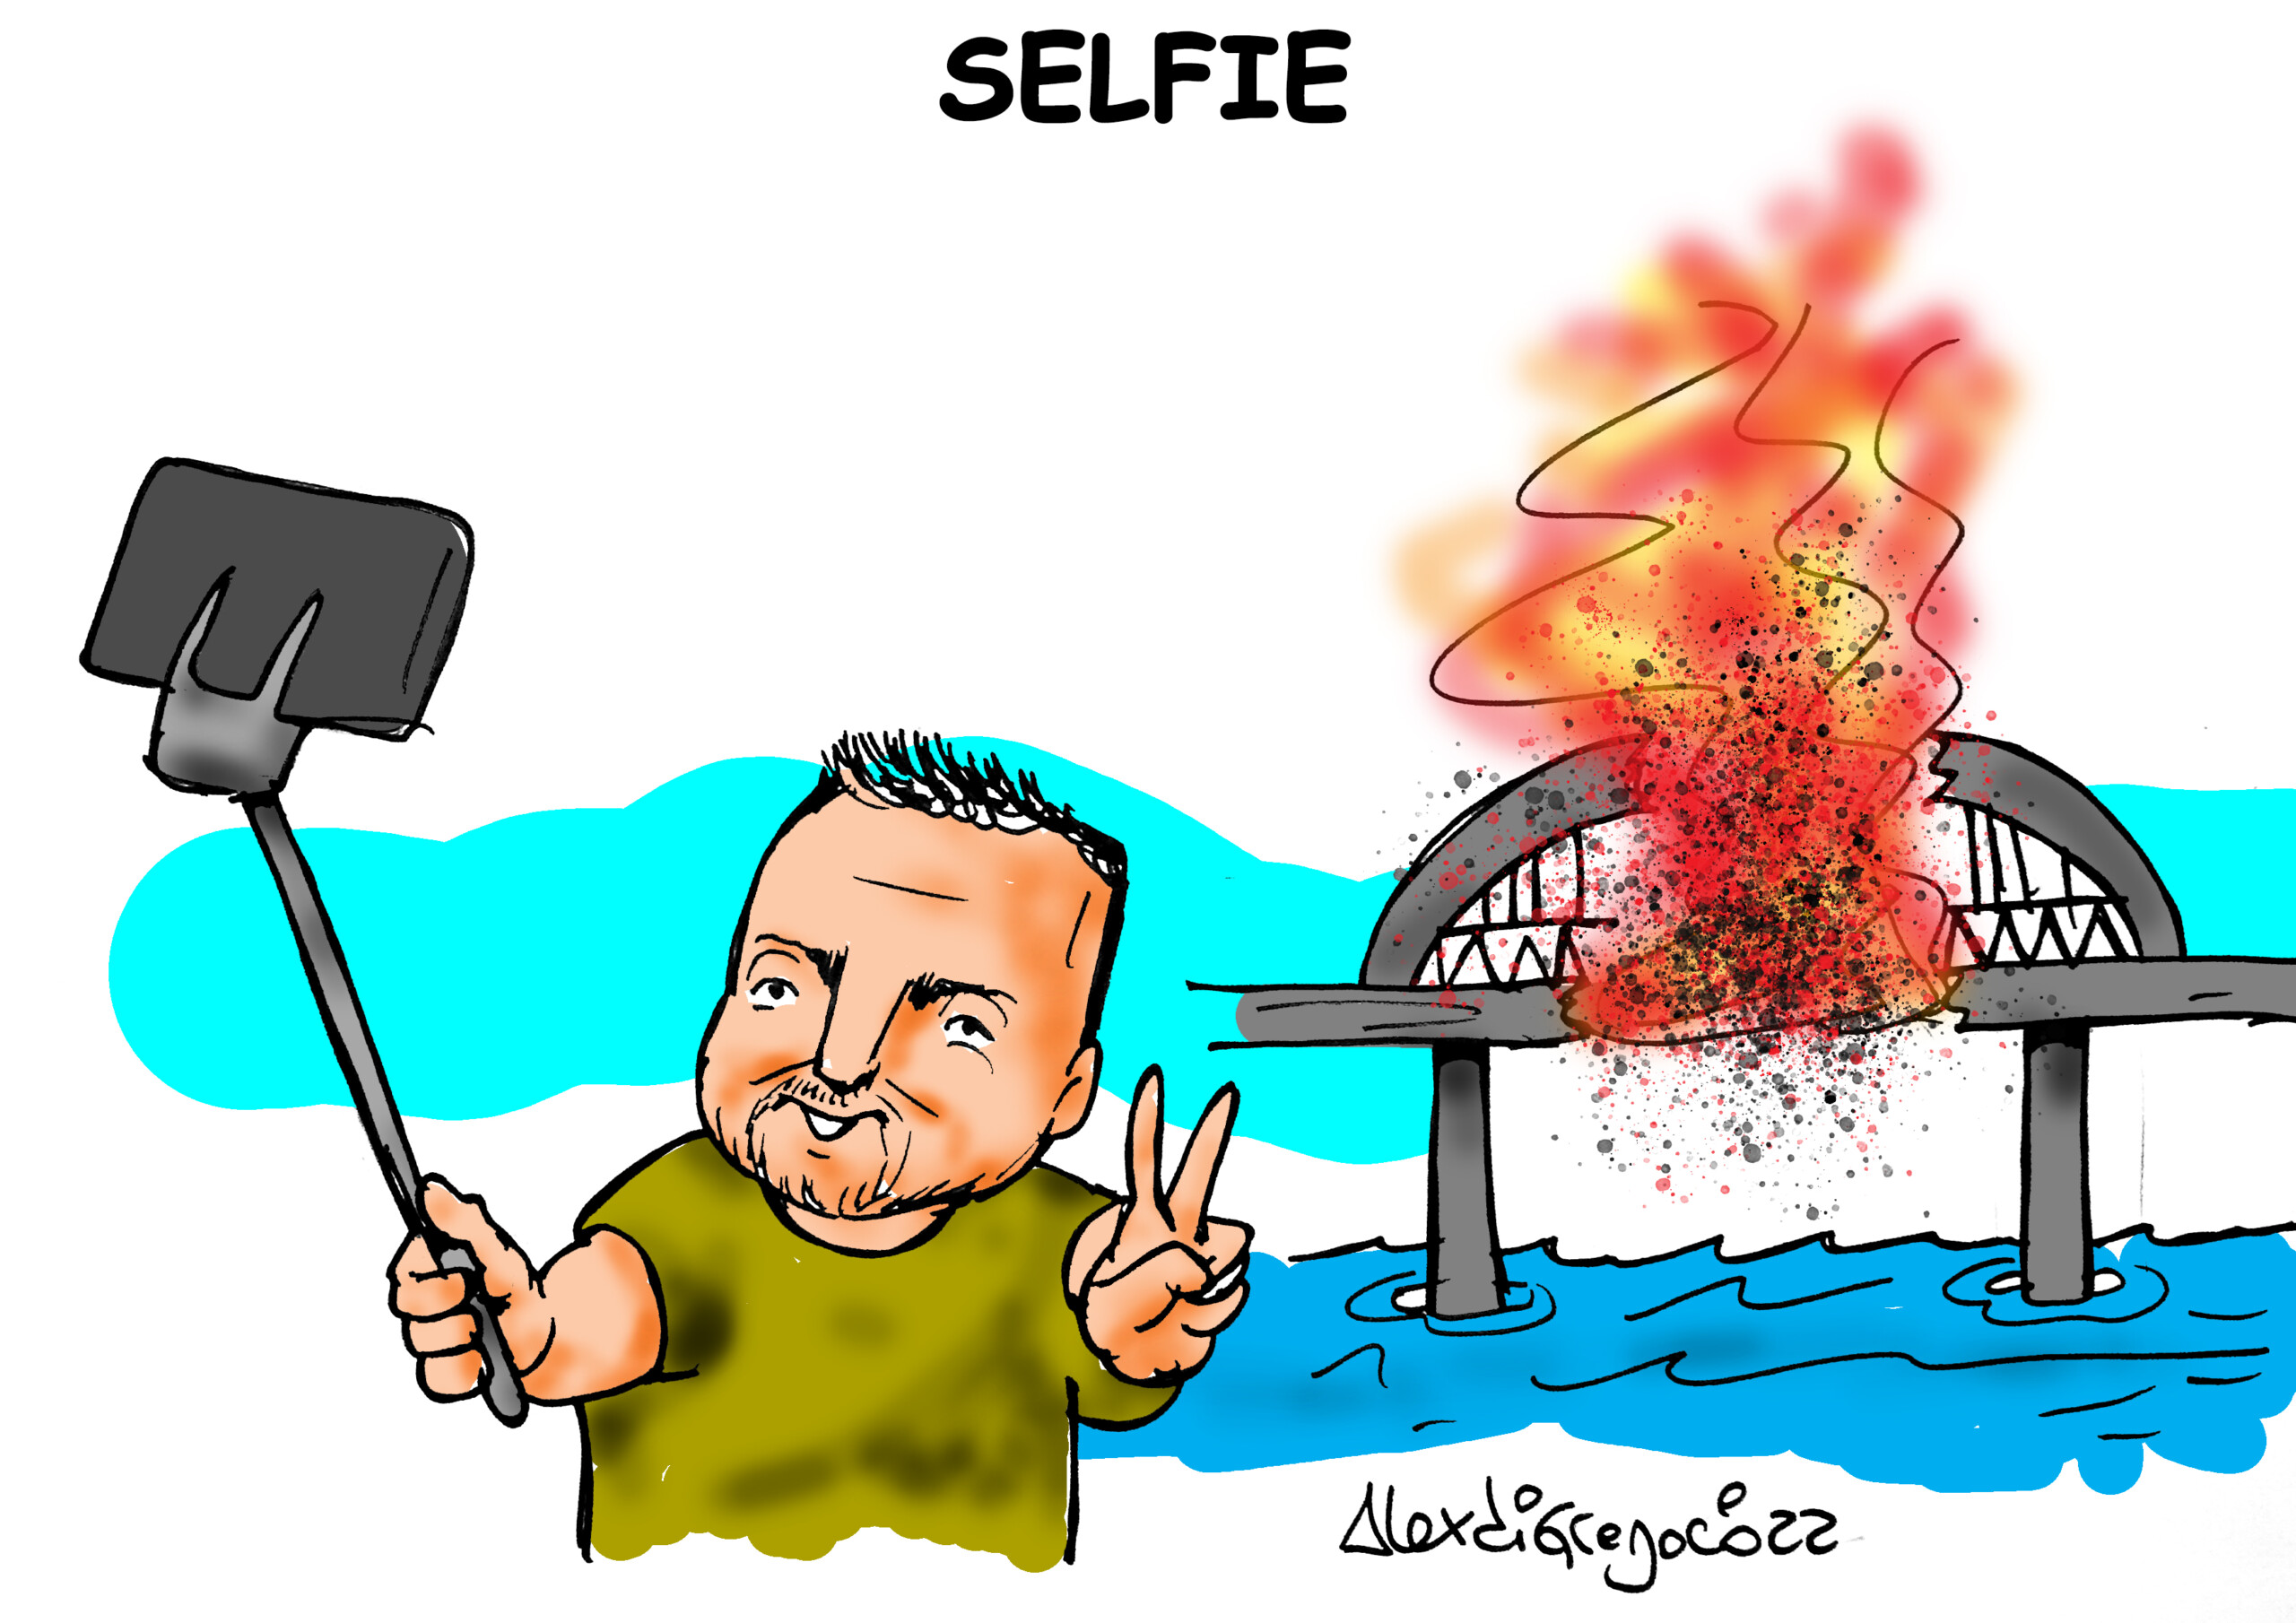 La Vignetta: “Selfie dalla Crimea”